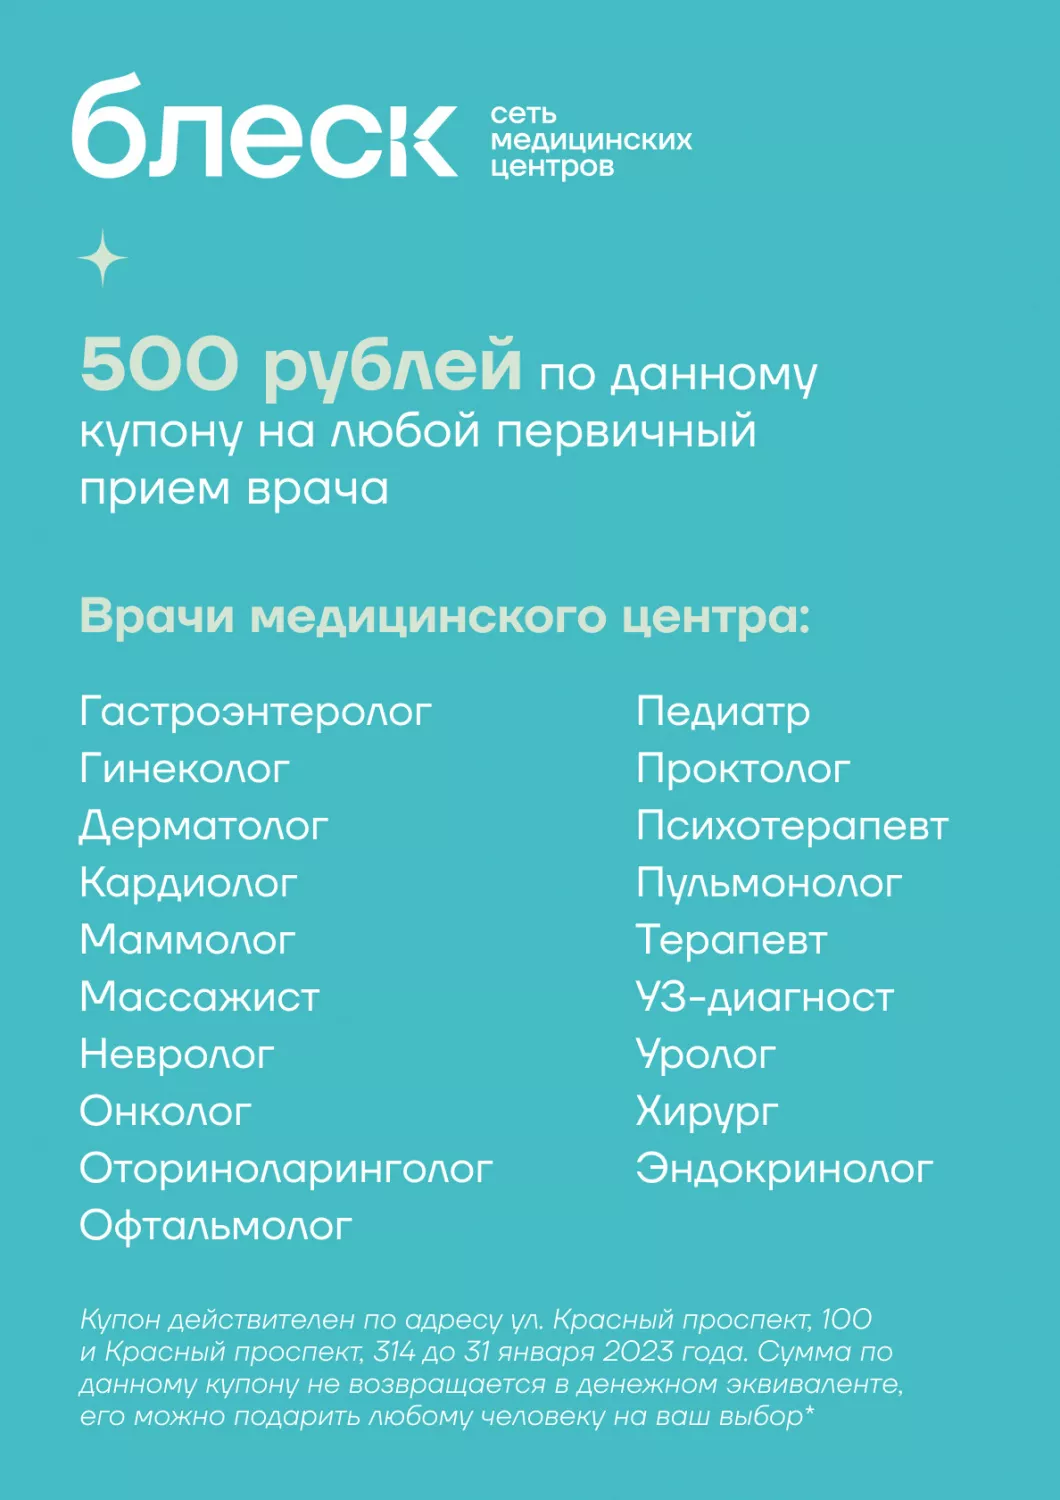 Дарим сертификат 500 рублей на любой первичный прием врача в многопрофильных медицинских центрах «Блеск» (Красный пр-кт 100 и Красный пр-кт 314)